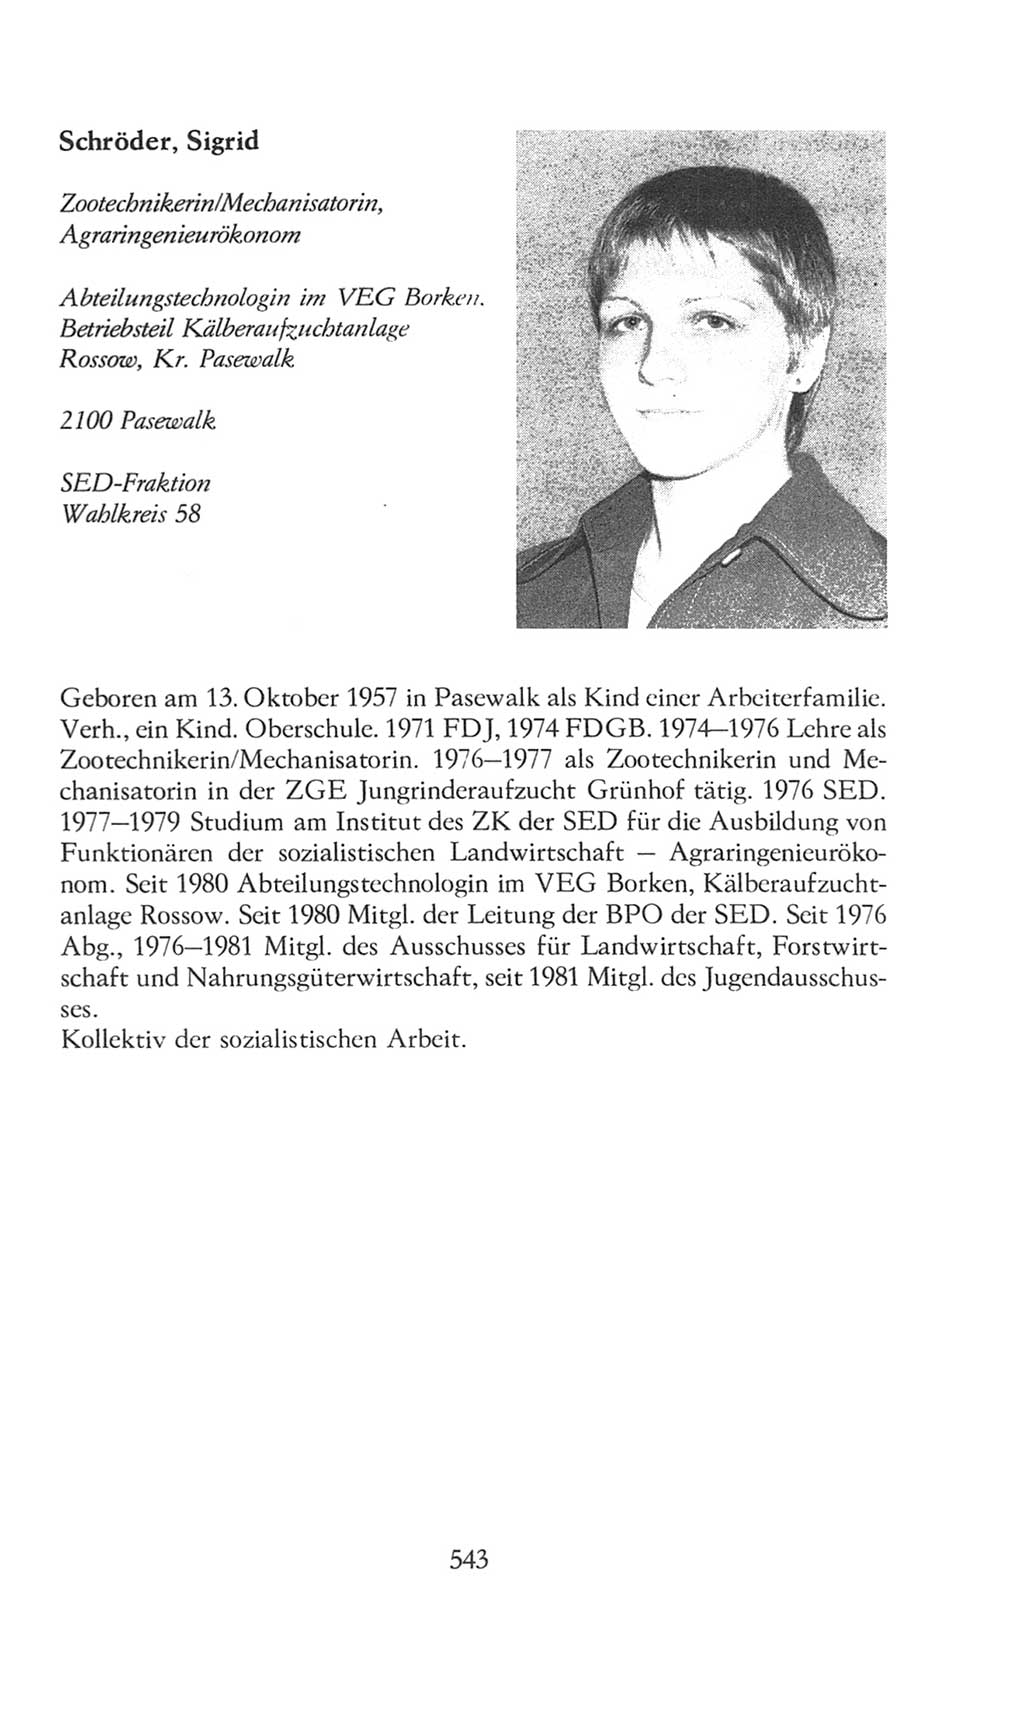 Volkskammer (VK) der Deutschen Demokratischen Republik (DDR), 8. Wahlperiode 1981-1986, Seite 543 (VK. DDR 8. WP. 1981-1986, S. 543)